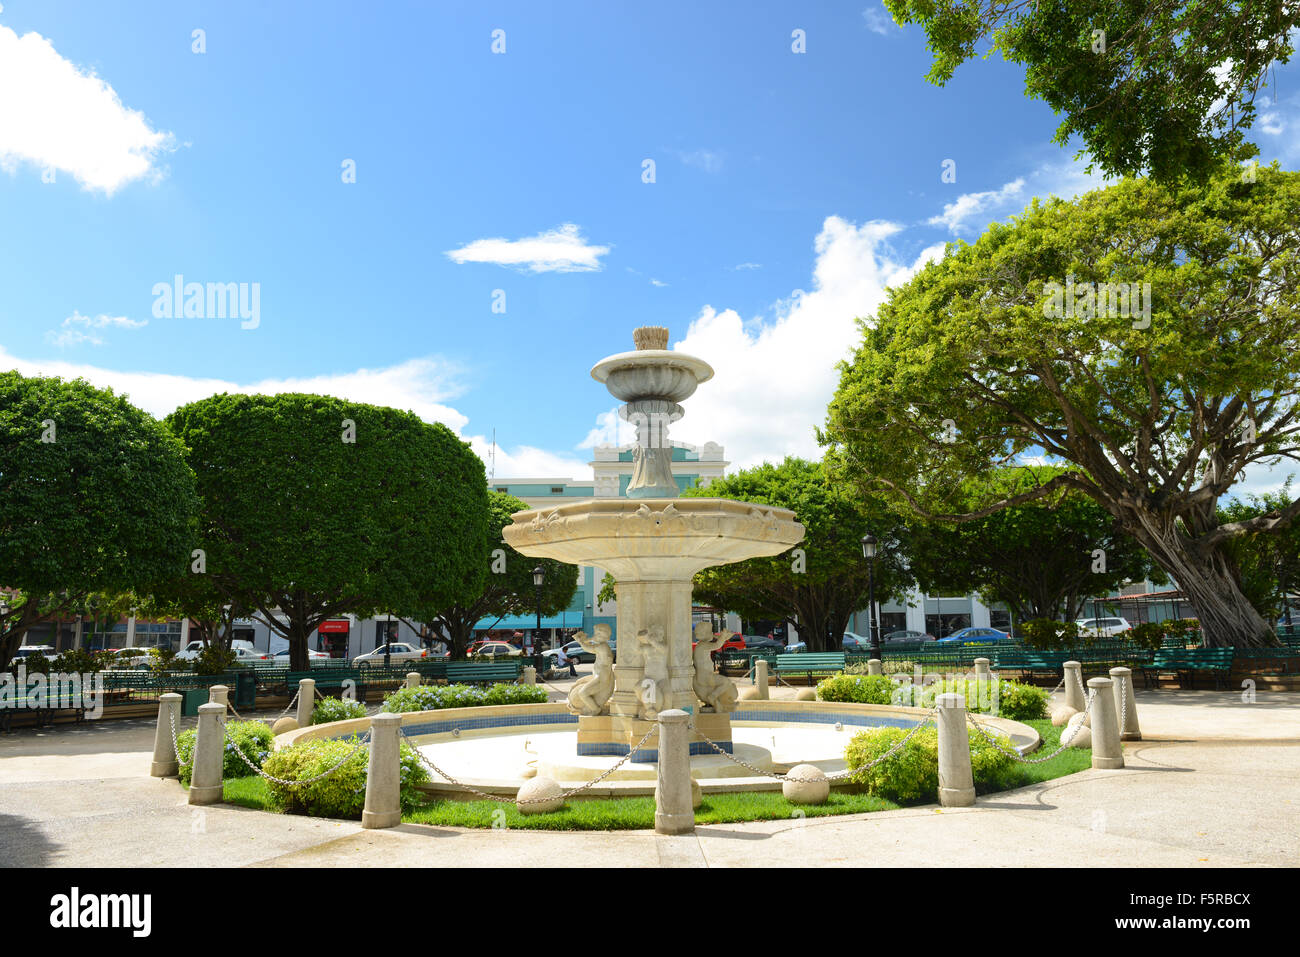 Wasser-Brunnen in der Mitte der Stadt Guayama, Puerto Rico. Territorium der USA. Karibik-Insel. Stockfoto